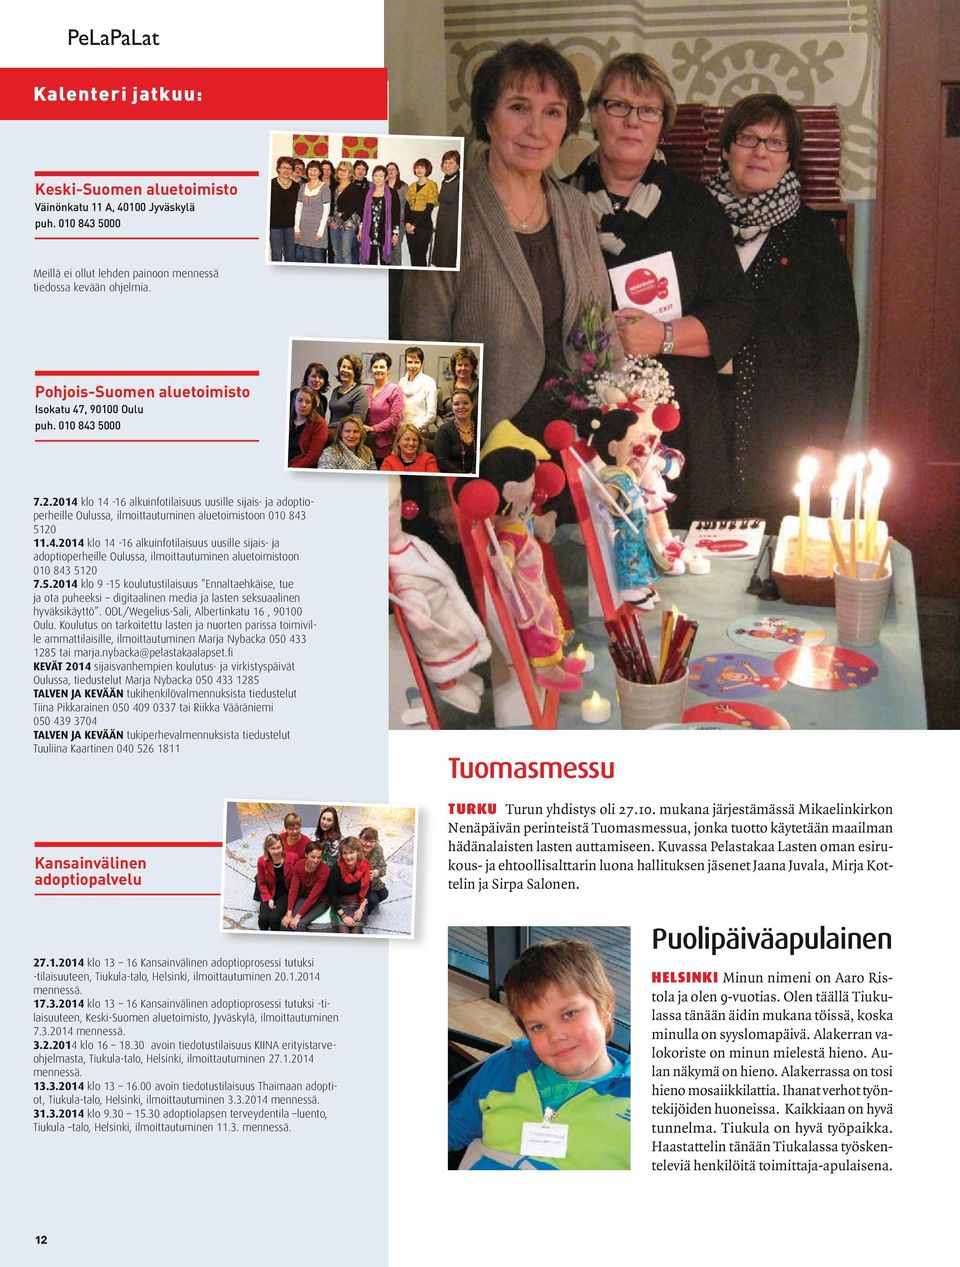 5.2014 klo 9-15 koulutustilaisuus Ennaltaehkäise, tue ja ota puheeksi digitaalinen media ja lasten seksuaalinen hyväksikäyttö. ODL/Wegelius-Sali, Albertinkatu 16, 90100 Oulu.